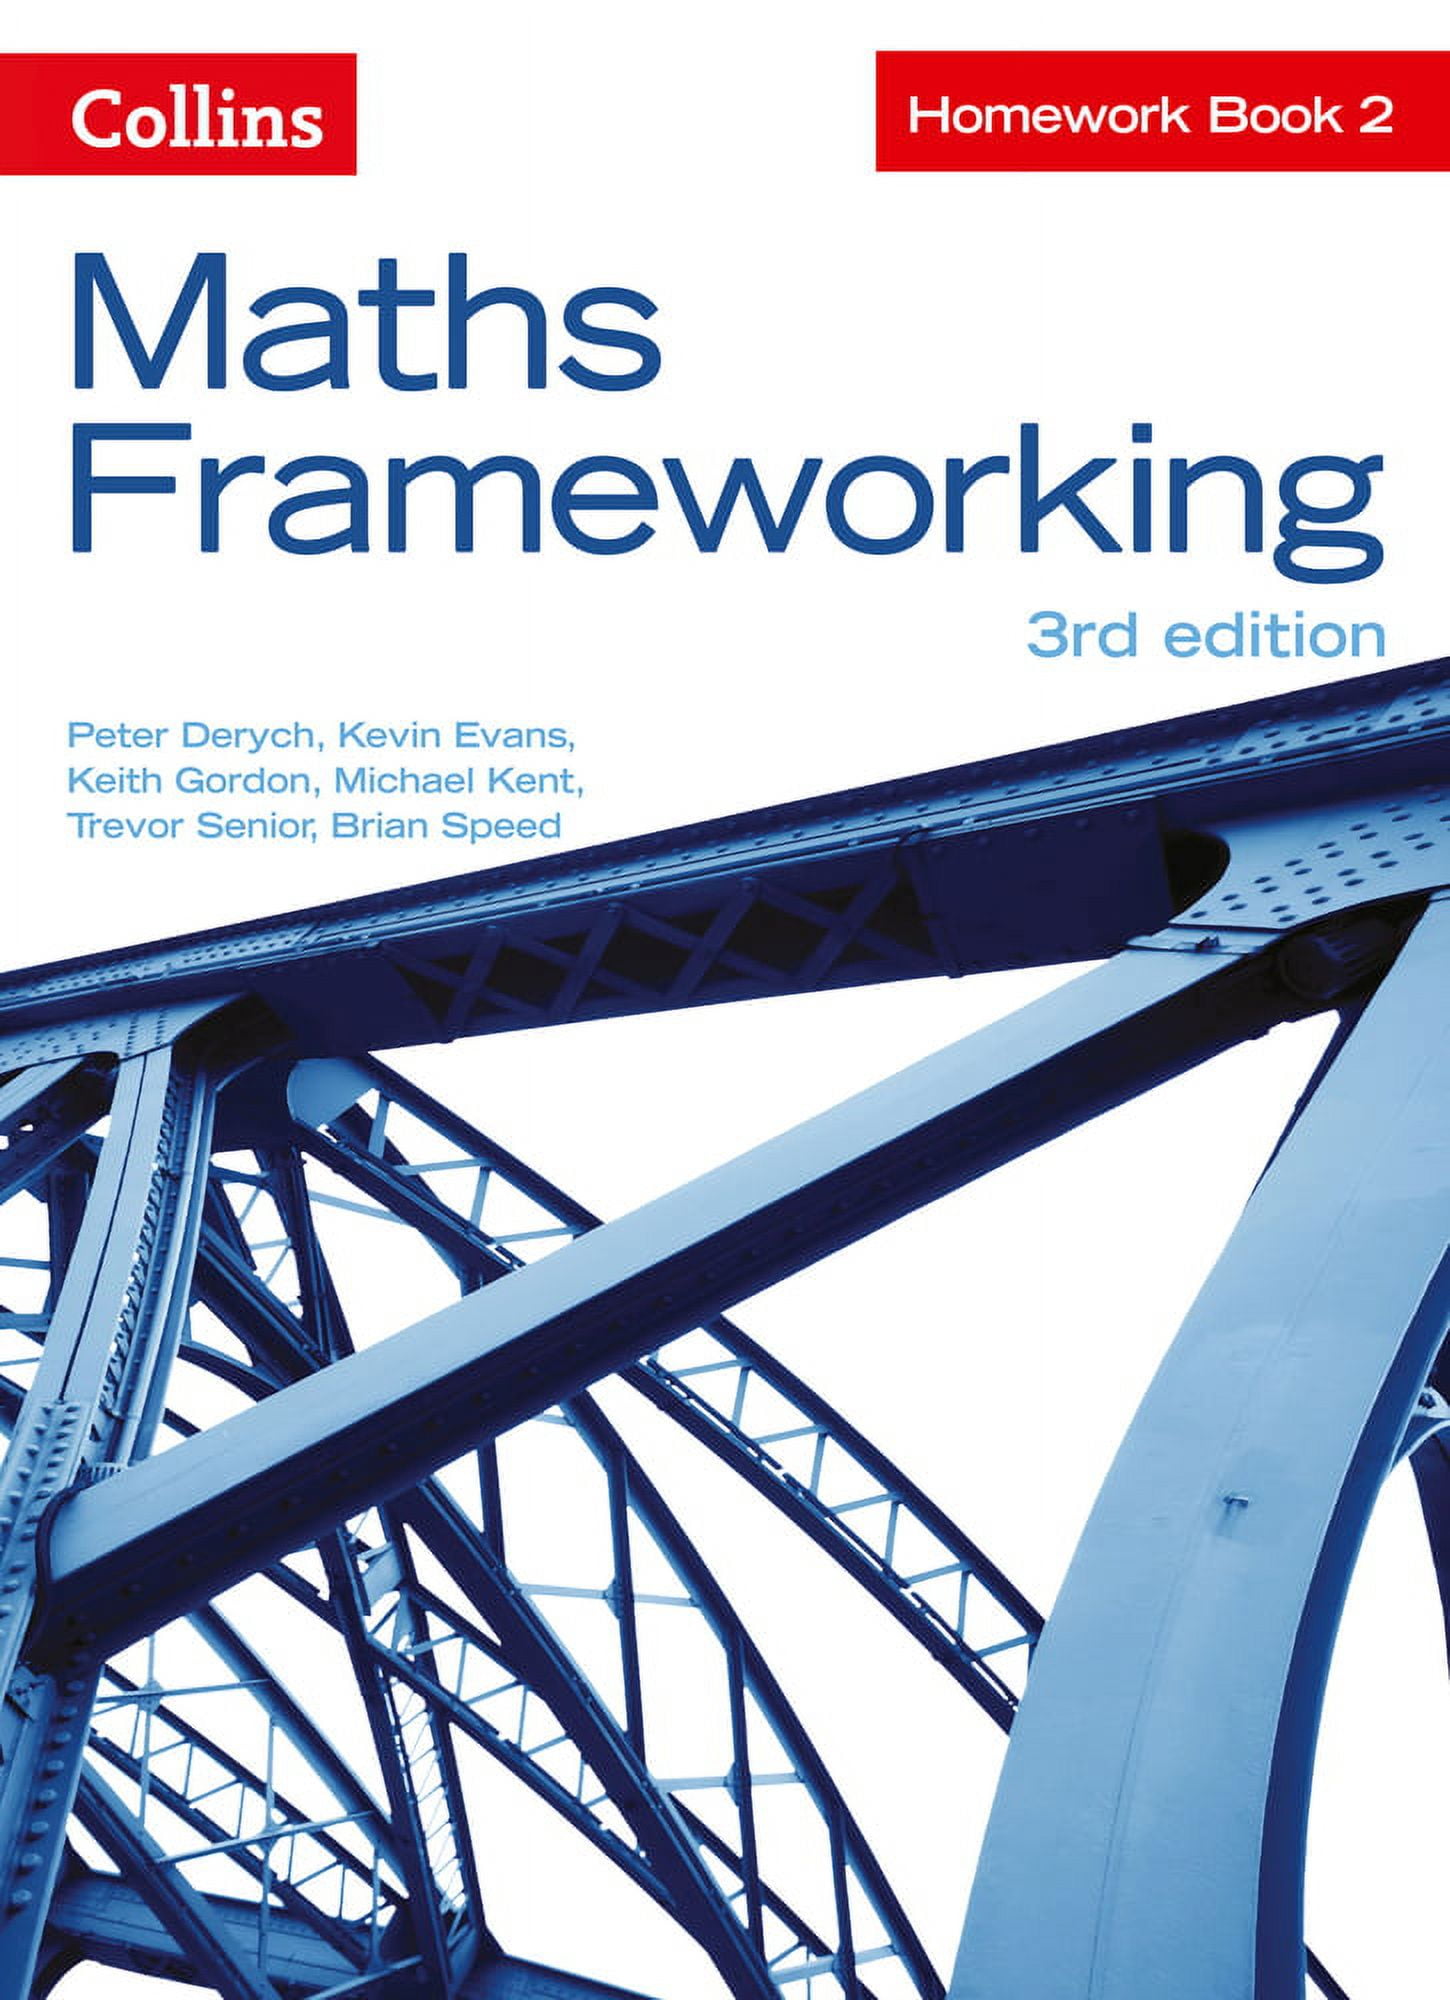 maths frameworking homework book 3 answers